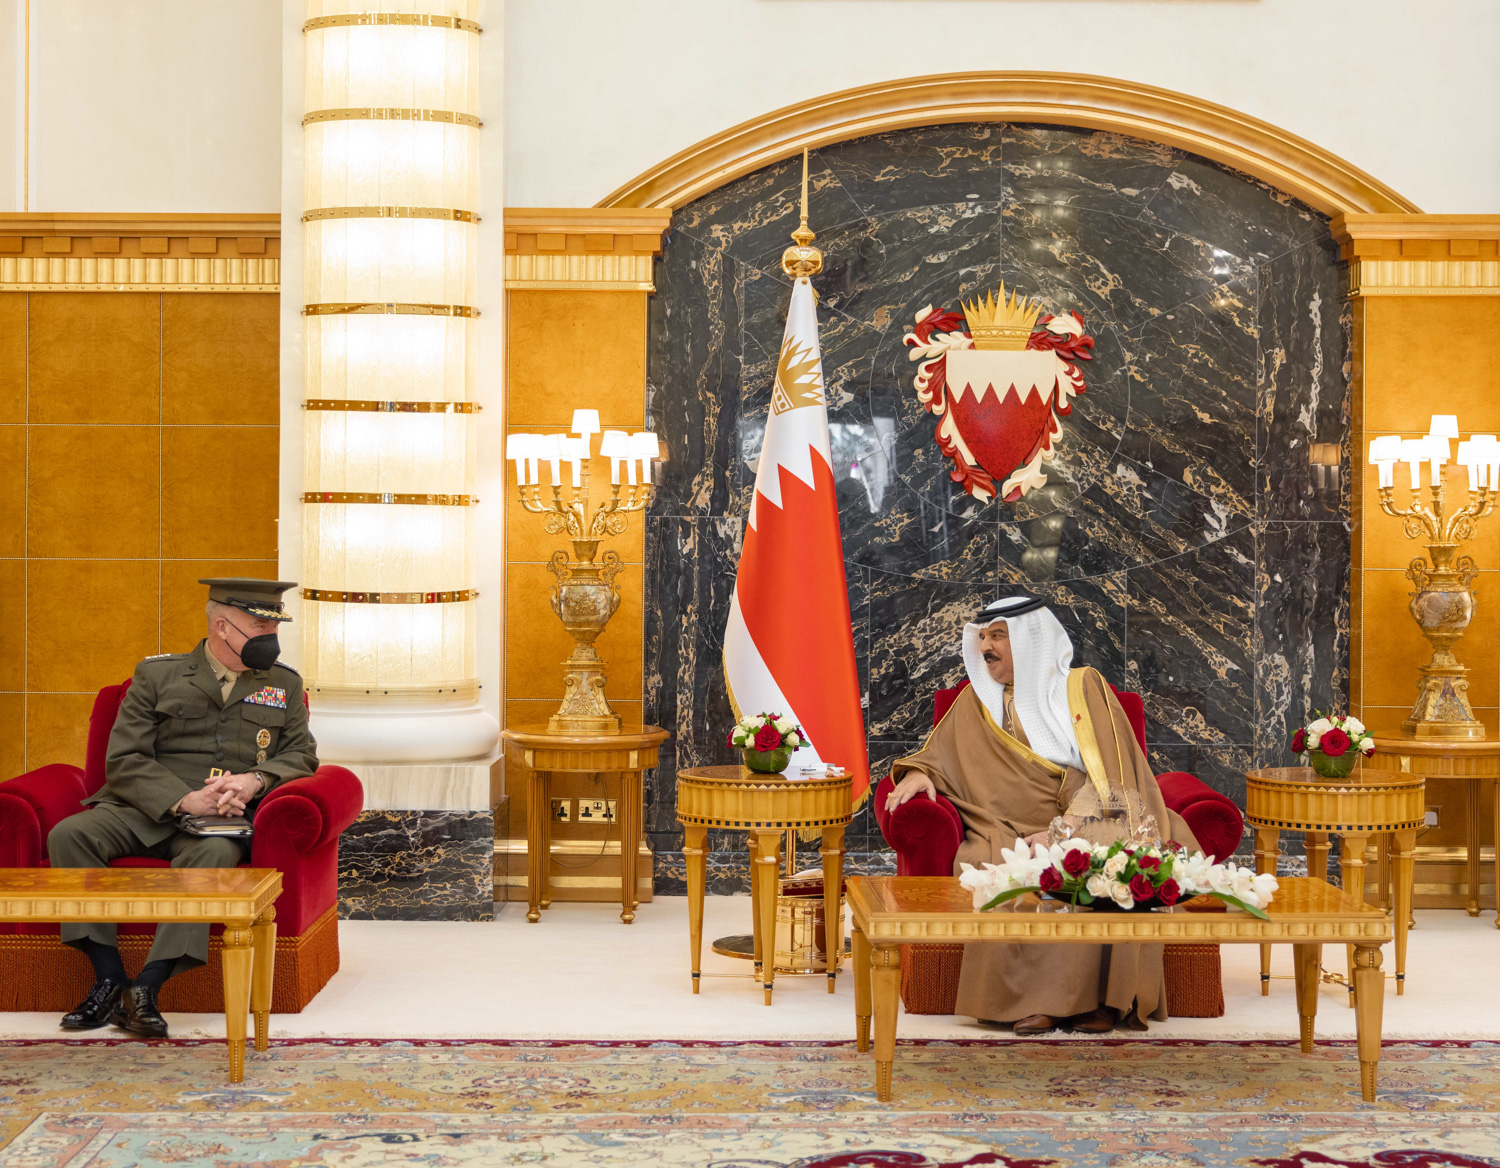 الملك  البحريني حمد بن عيسى آل خليفة  في قصر الصخير الفريق أول كينيث ماكينزي قائد القيادة المركزية الأمريكية(بنا)